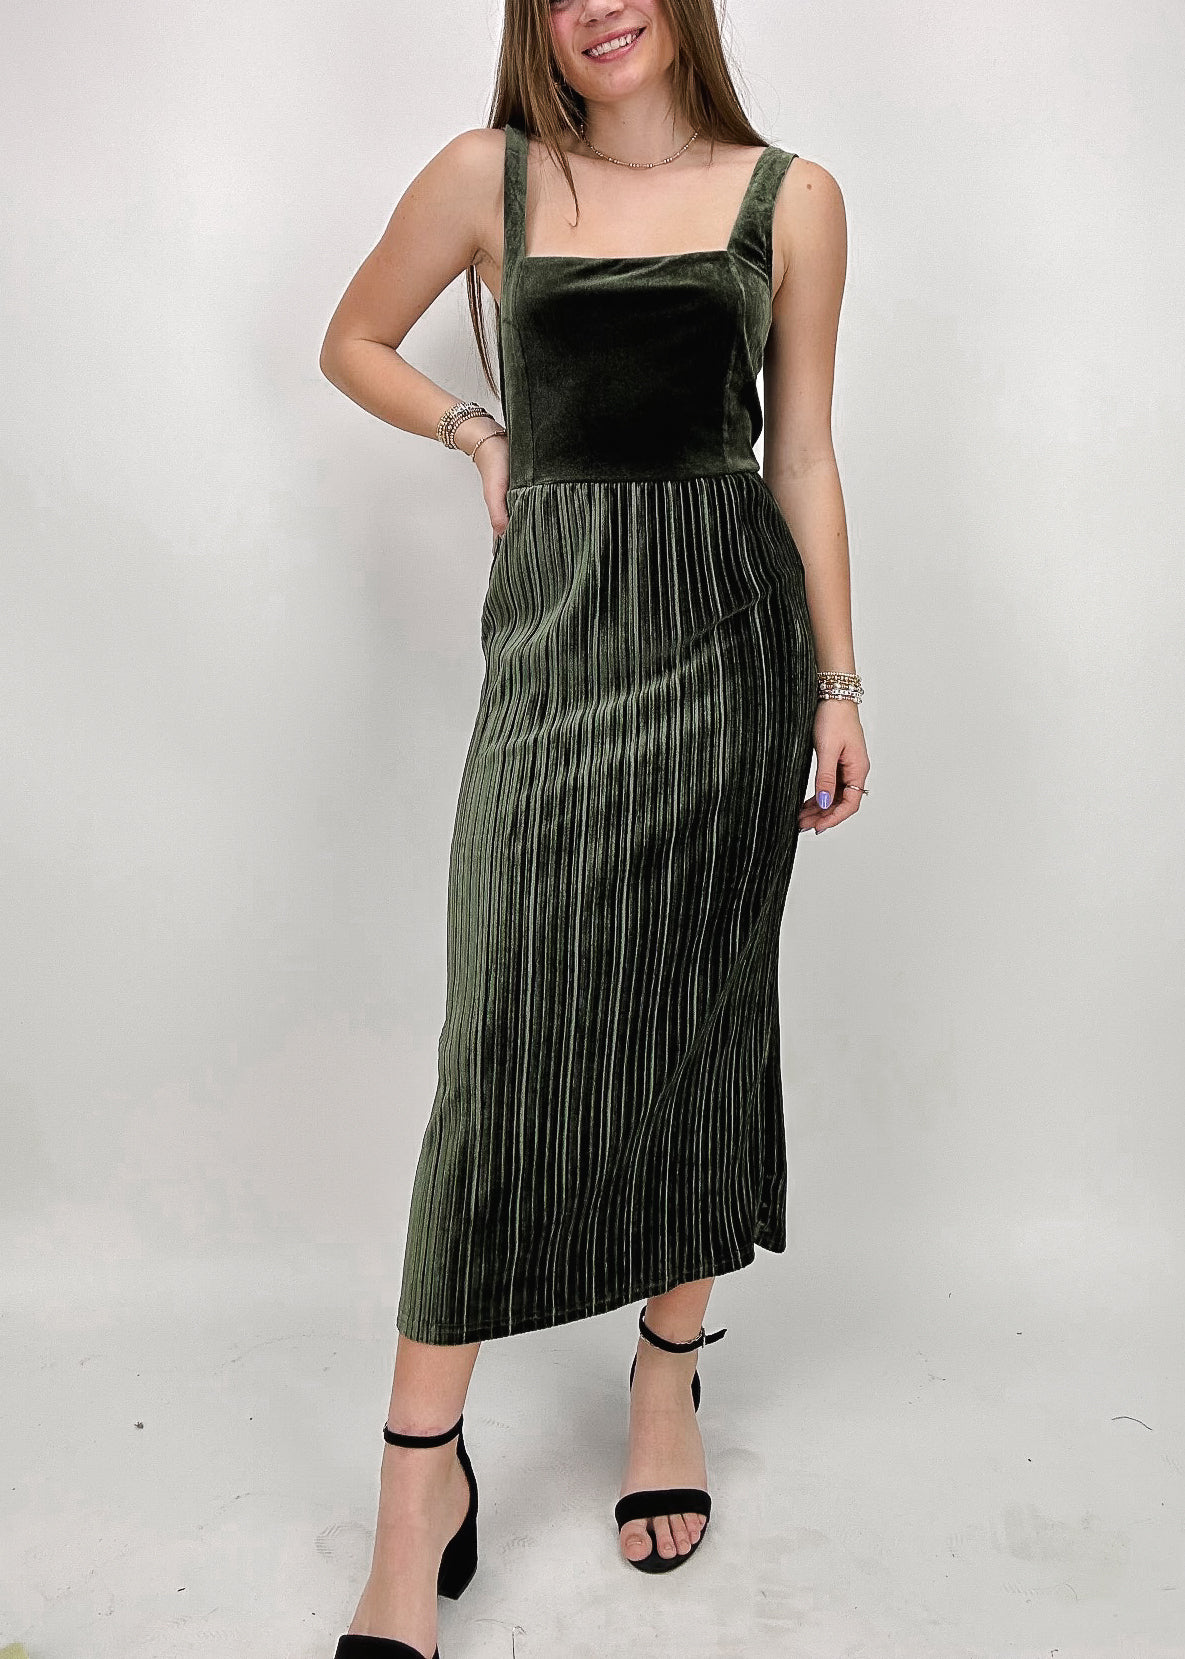 square neck olive green velvet women's midi dress with textured vertical stripe skirt detail 